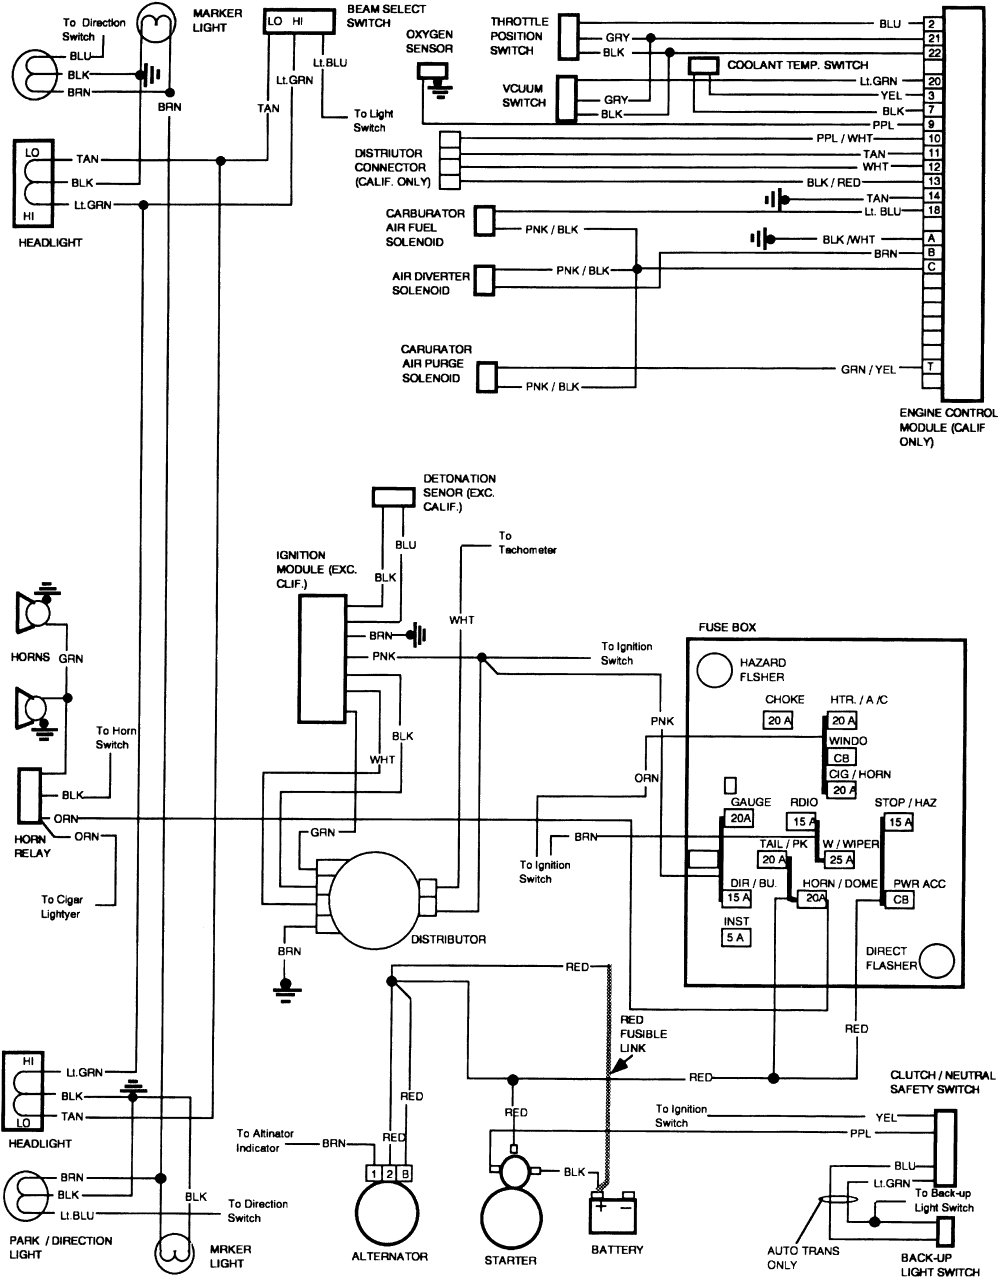 chevrolet c20 6.2ltr diesel wiring diagram starter solenoid schematics